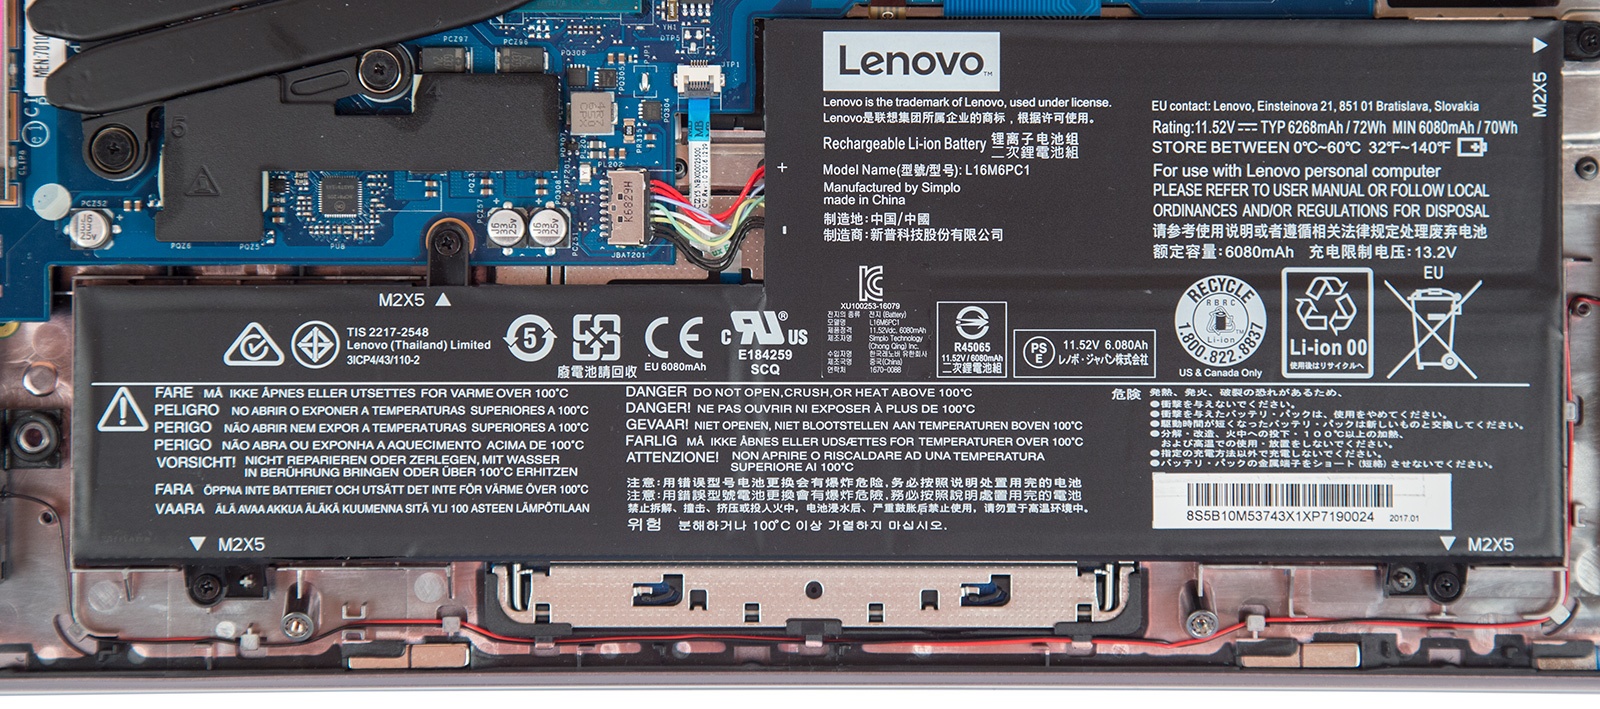 Универсальный Йог. Обзор ноутбука-трансформера Lenovo Yoga 720 - 27